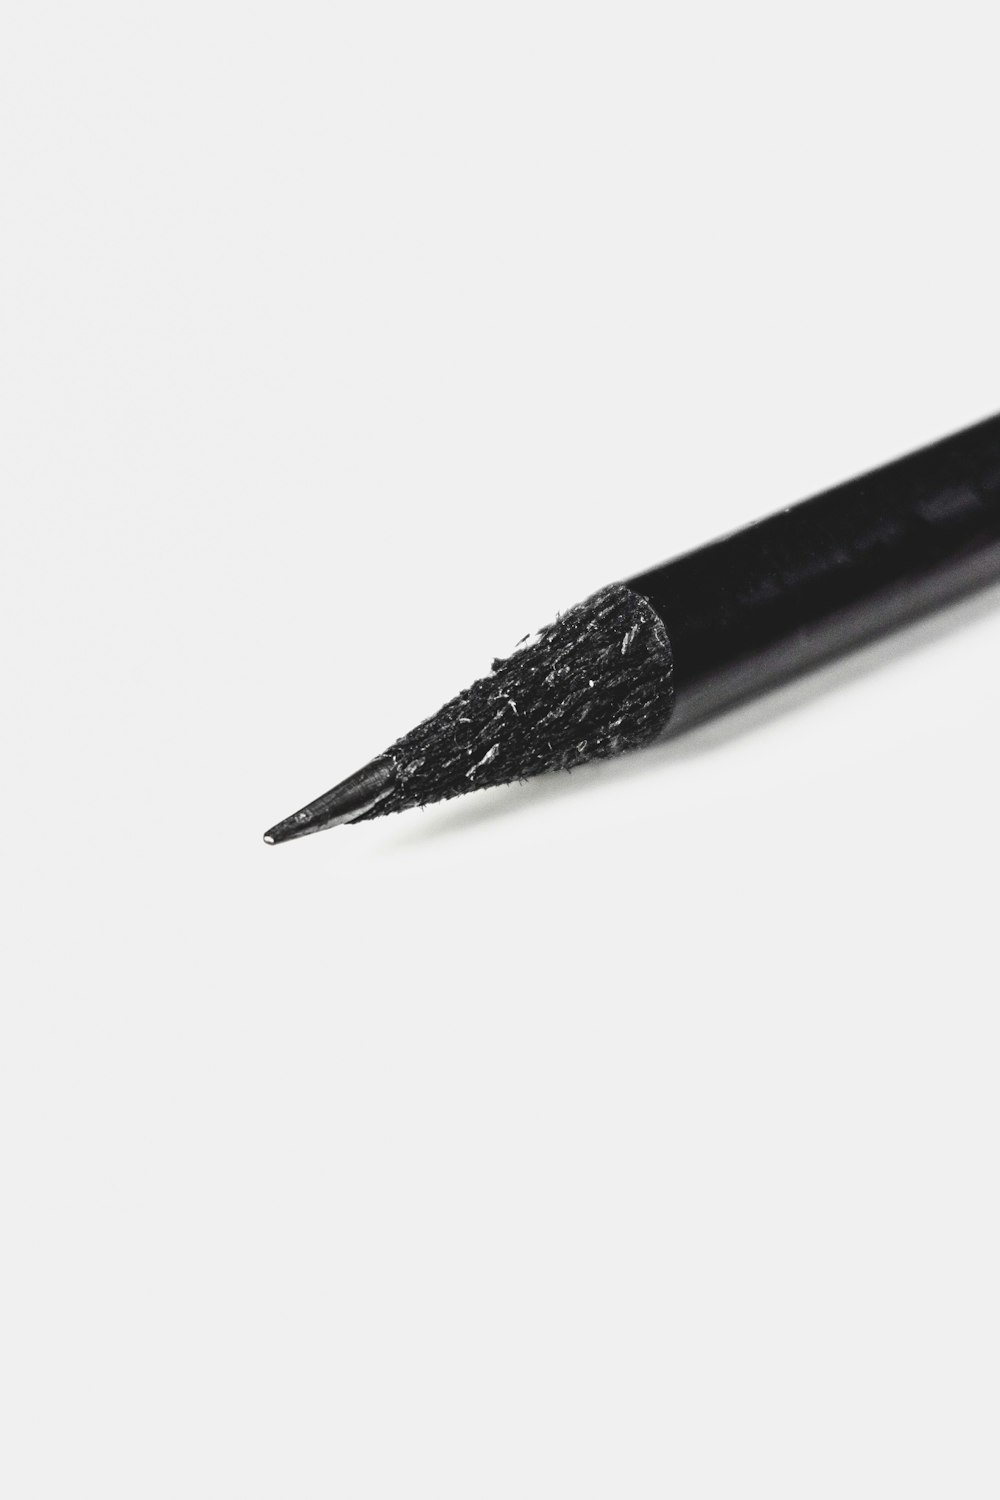 白い表面に黒い鉛筆